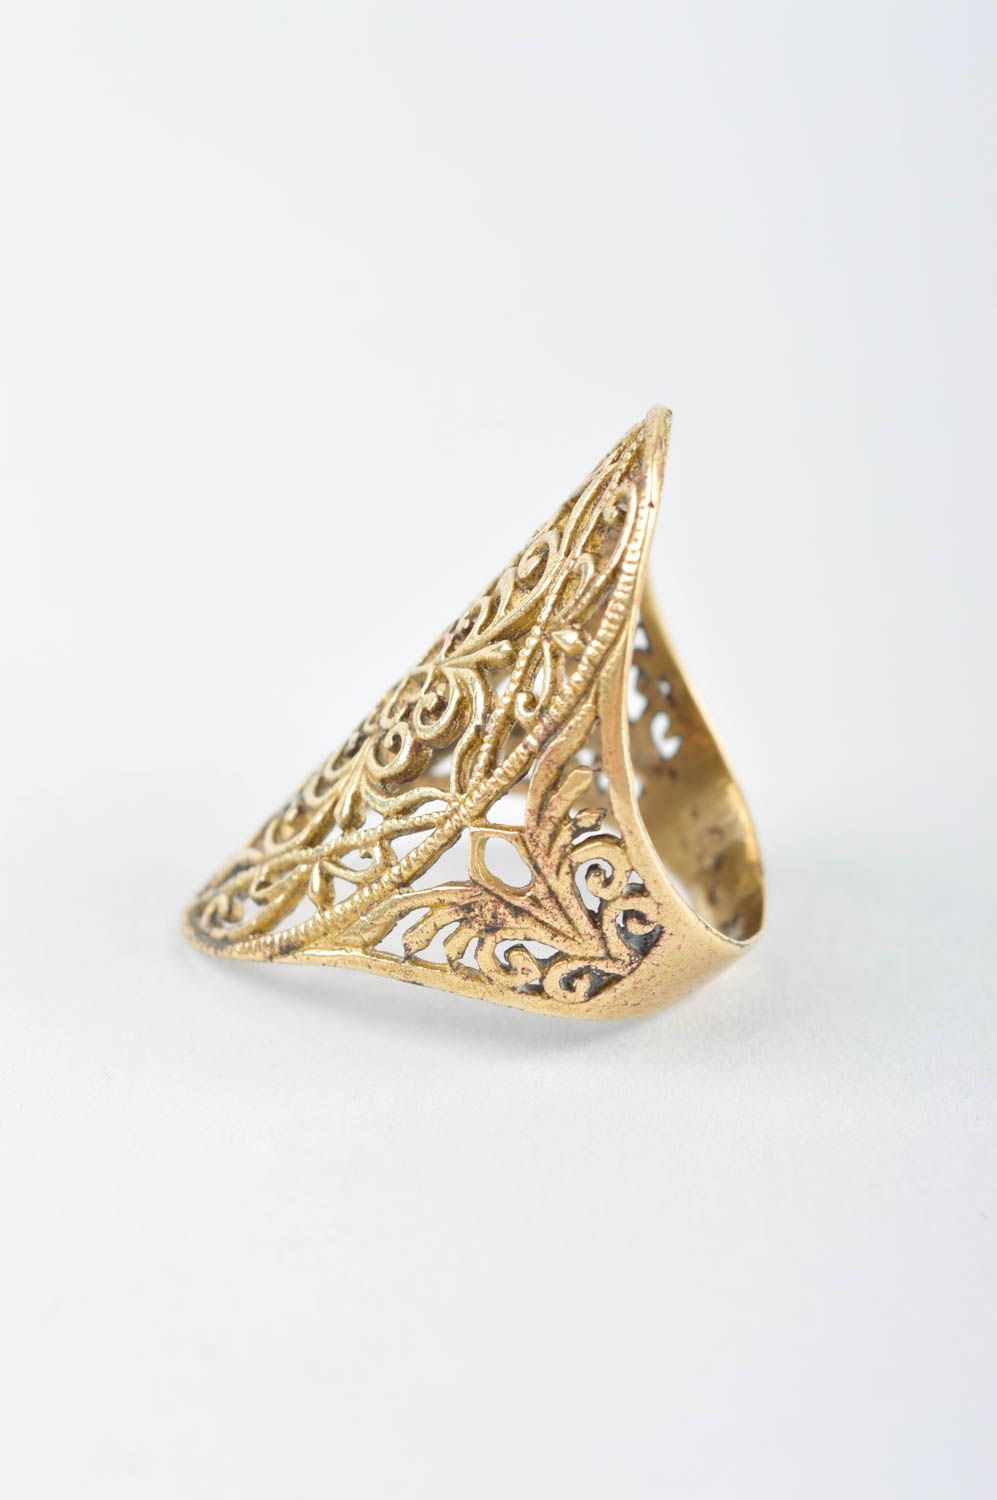 Резное украшение ручной работы изящное женское кольцо украшение из металла фото 2